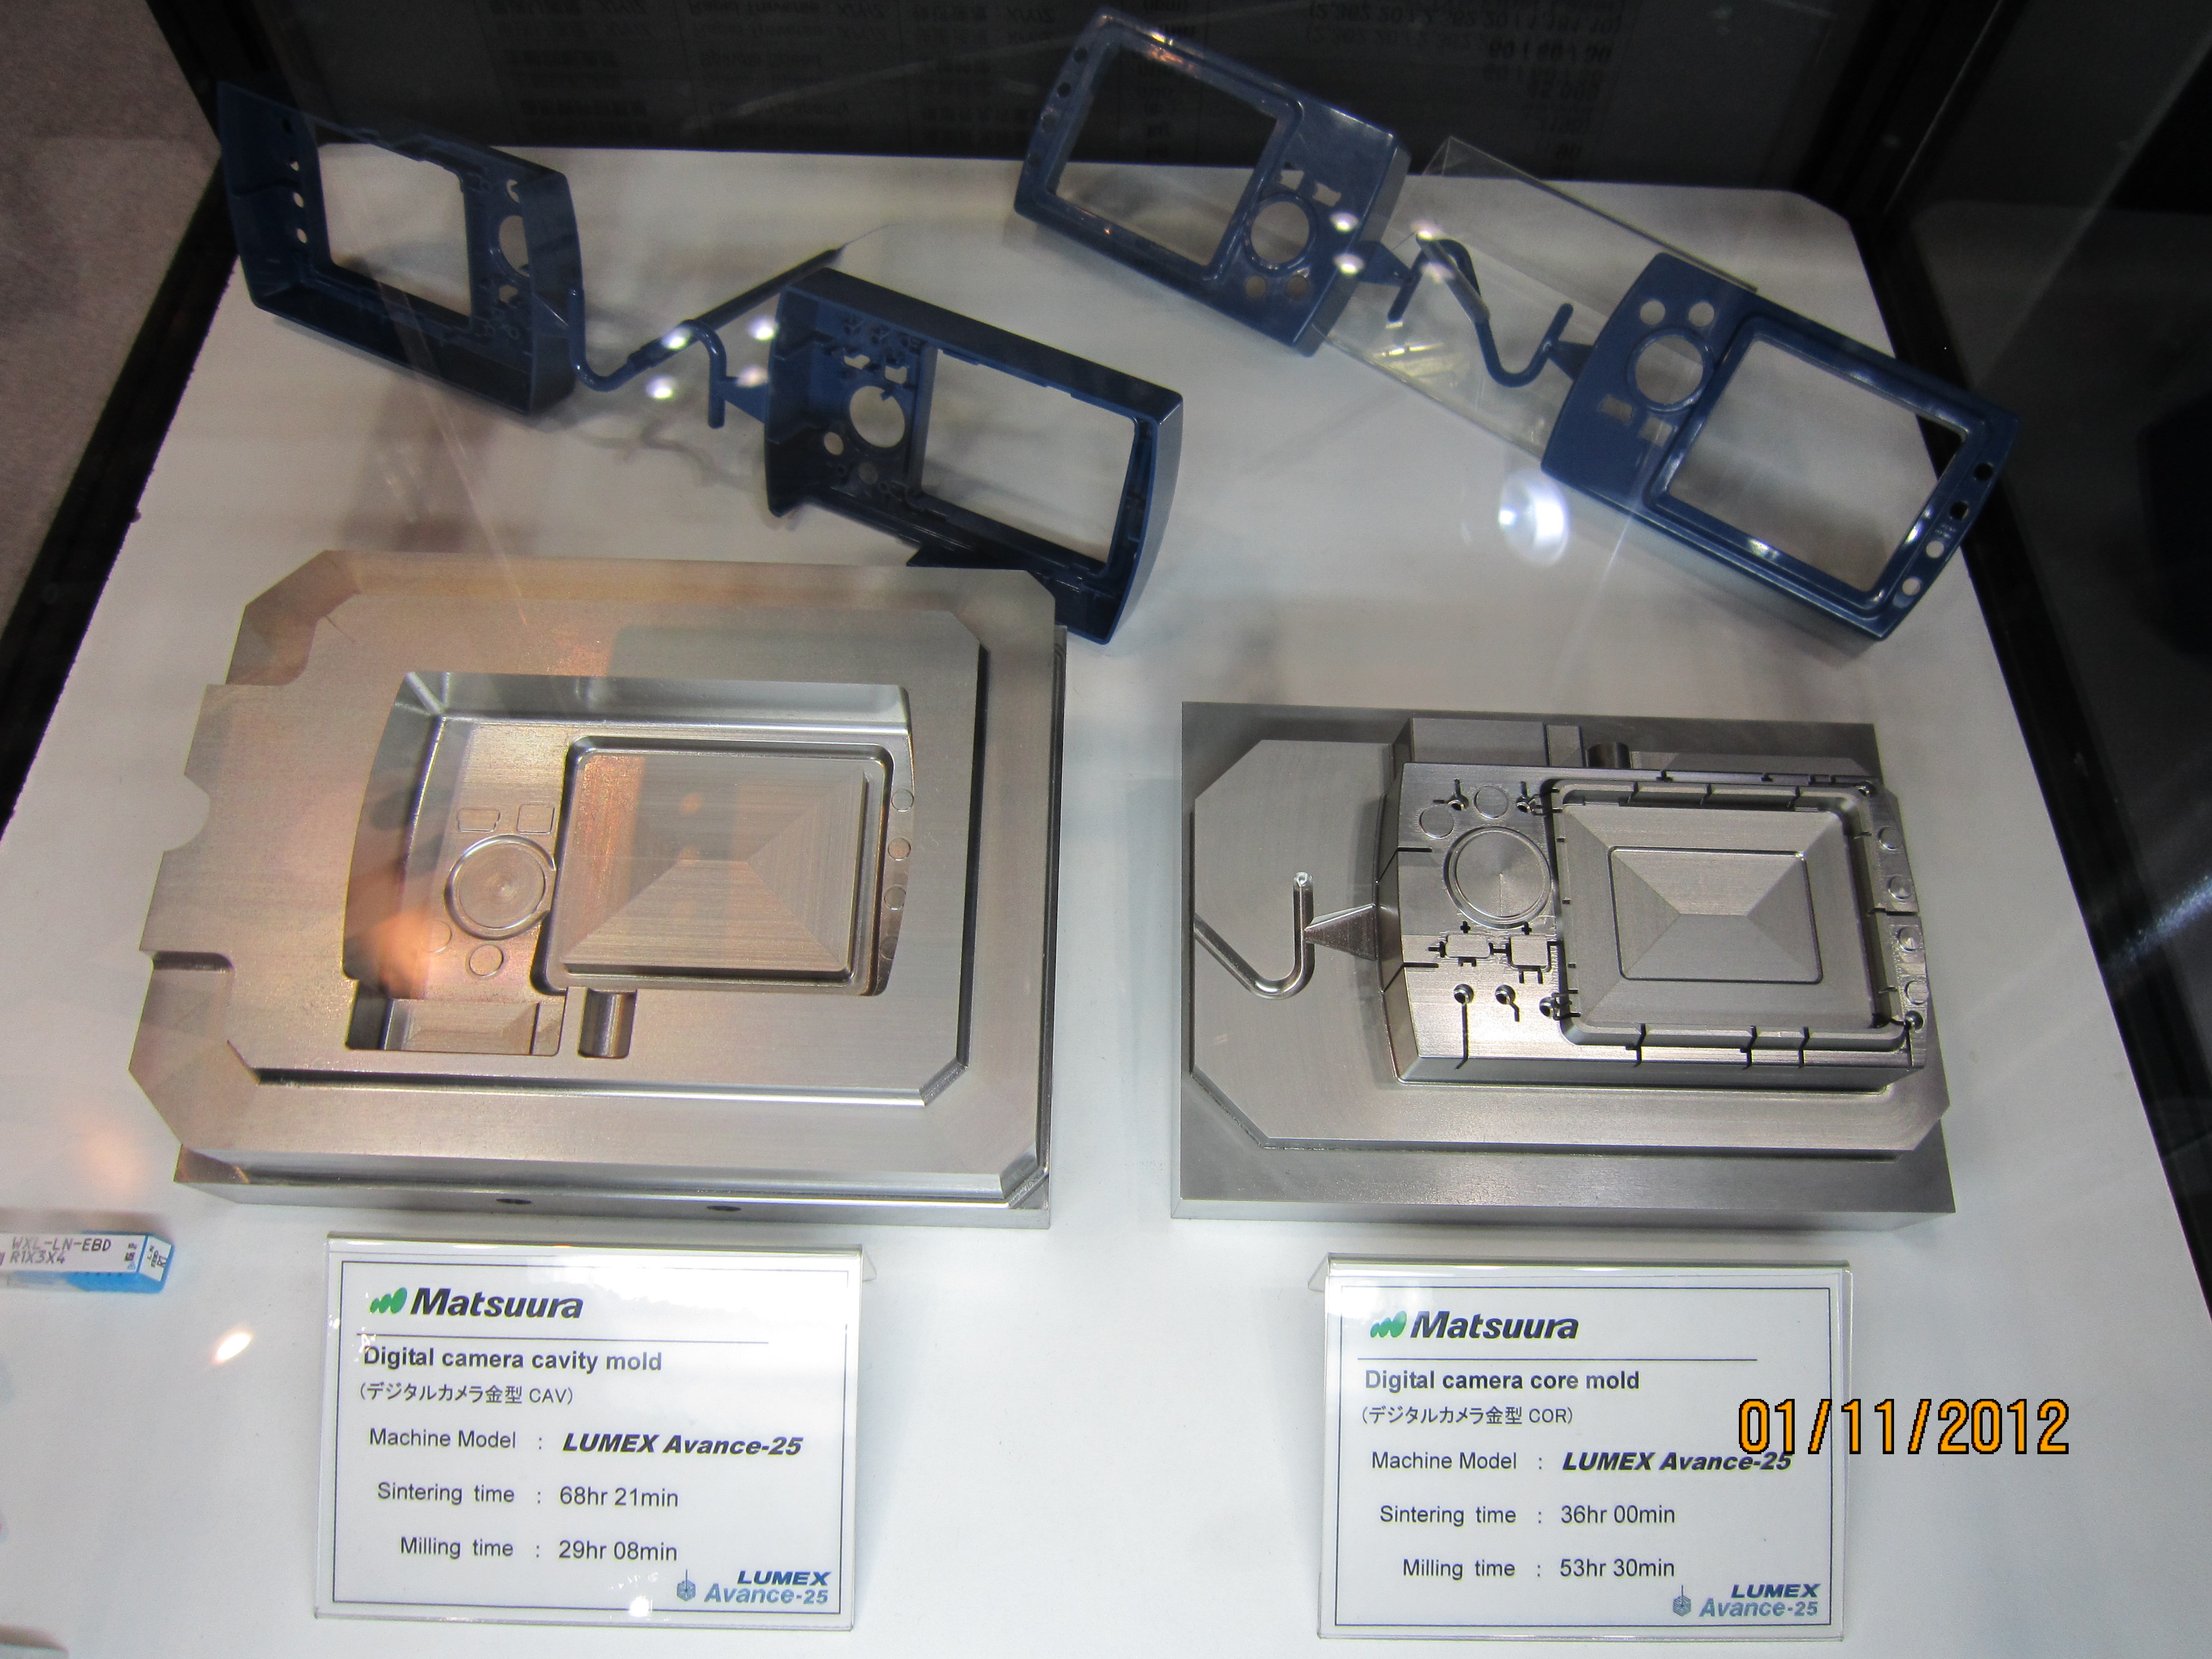 Digitaalikameran muotit on valmistettu Matsuura Lumex Avance-25 hybridikoneella, joka yhdistää lasersintrauksen ja suurnopeustyöstön